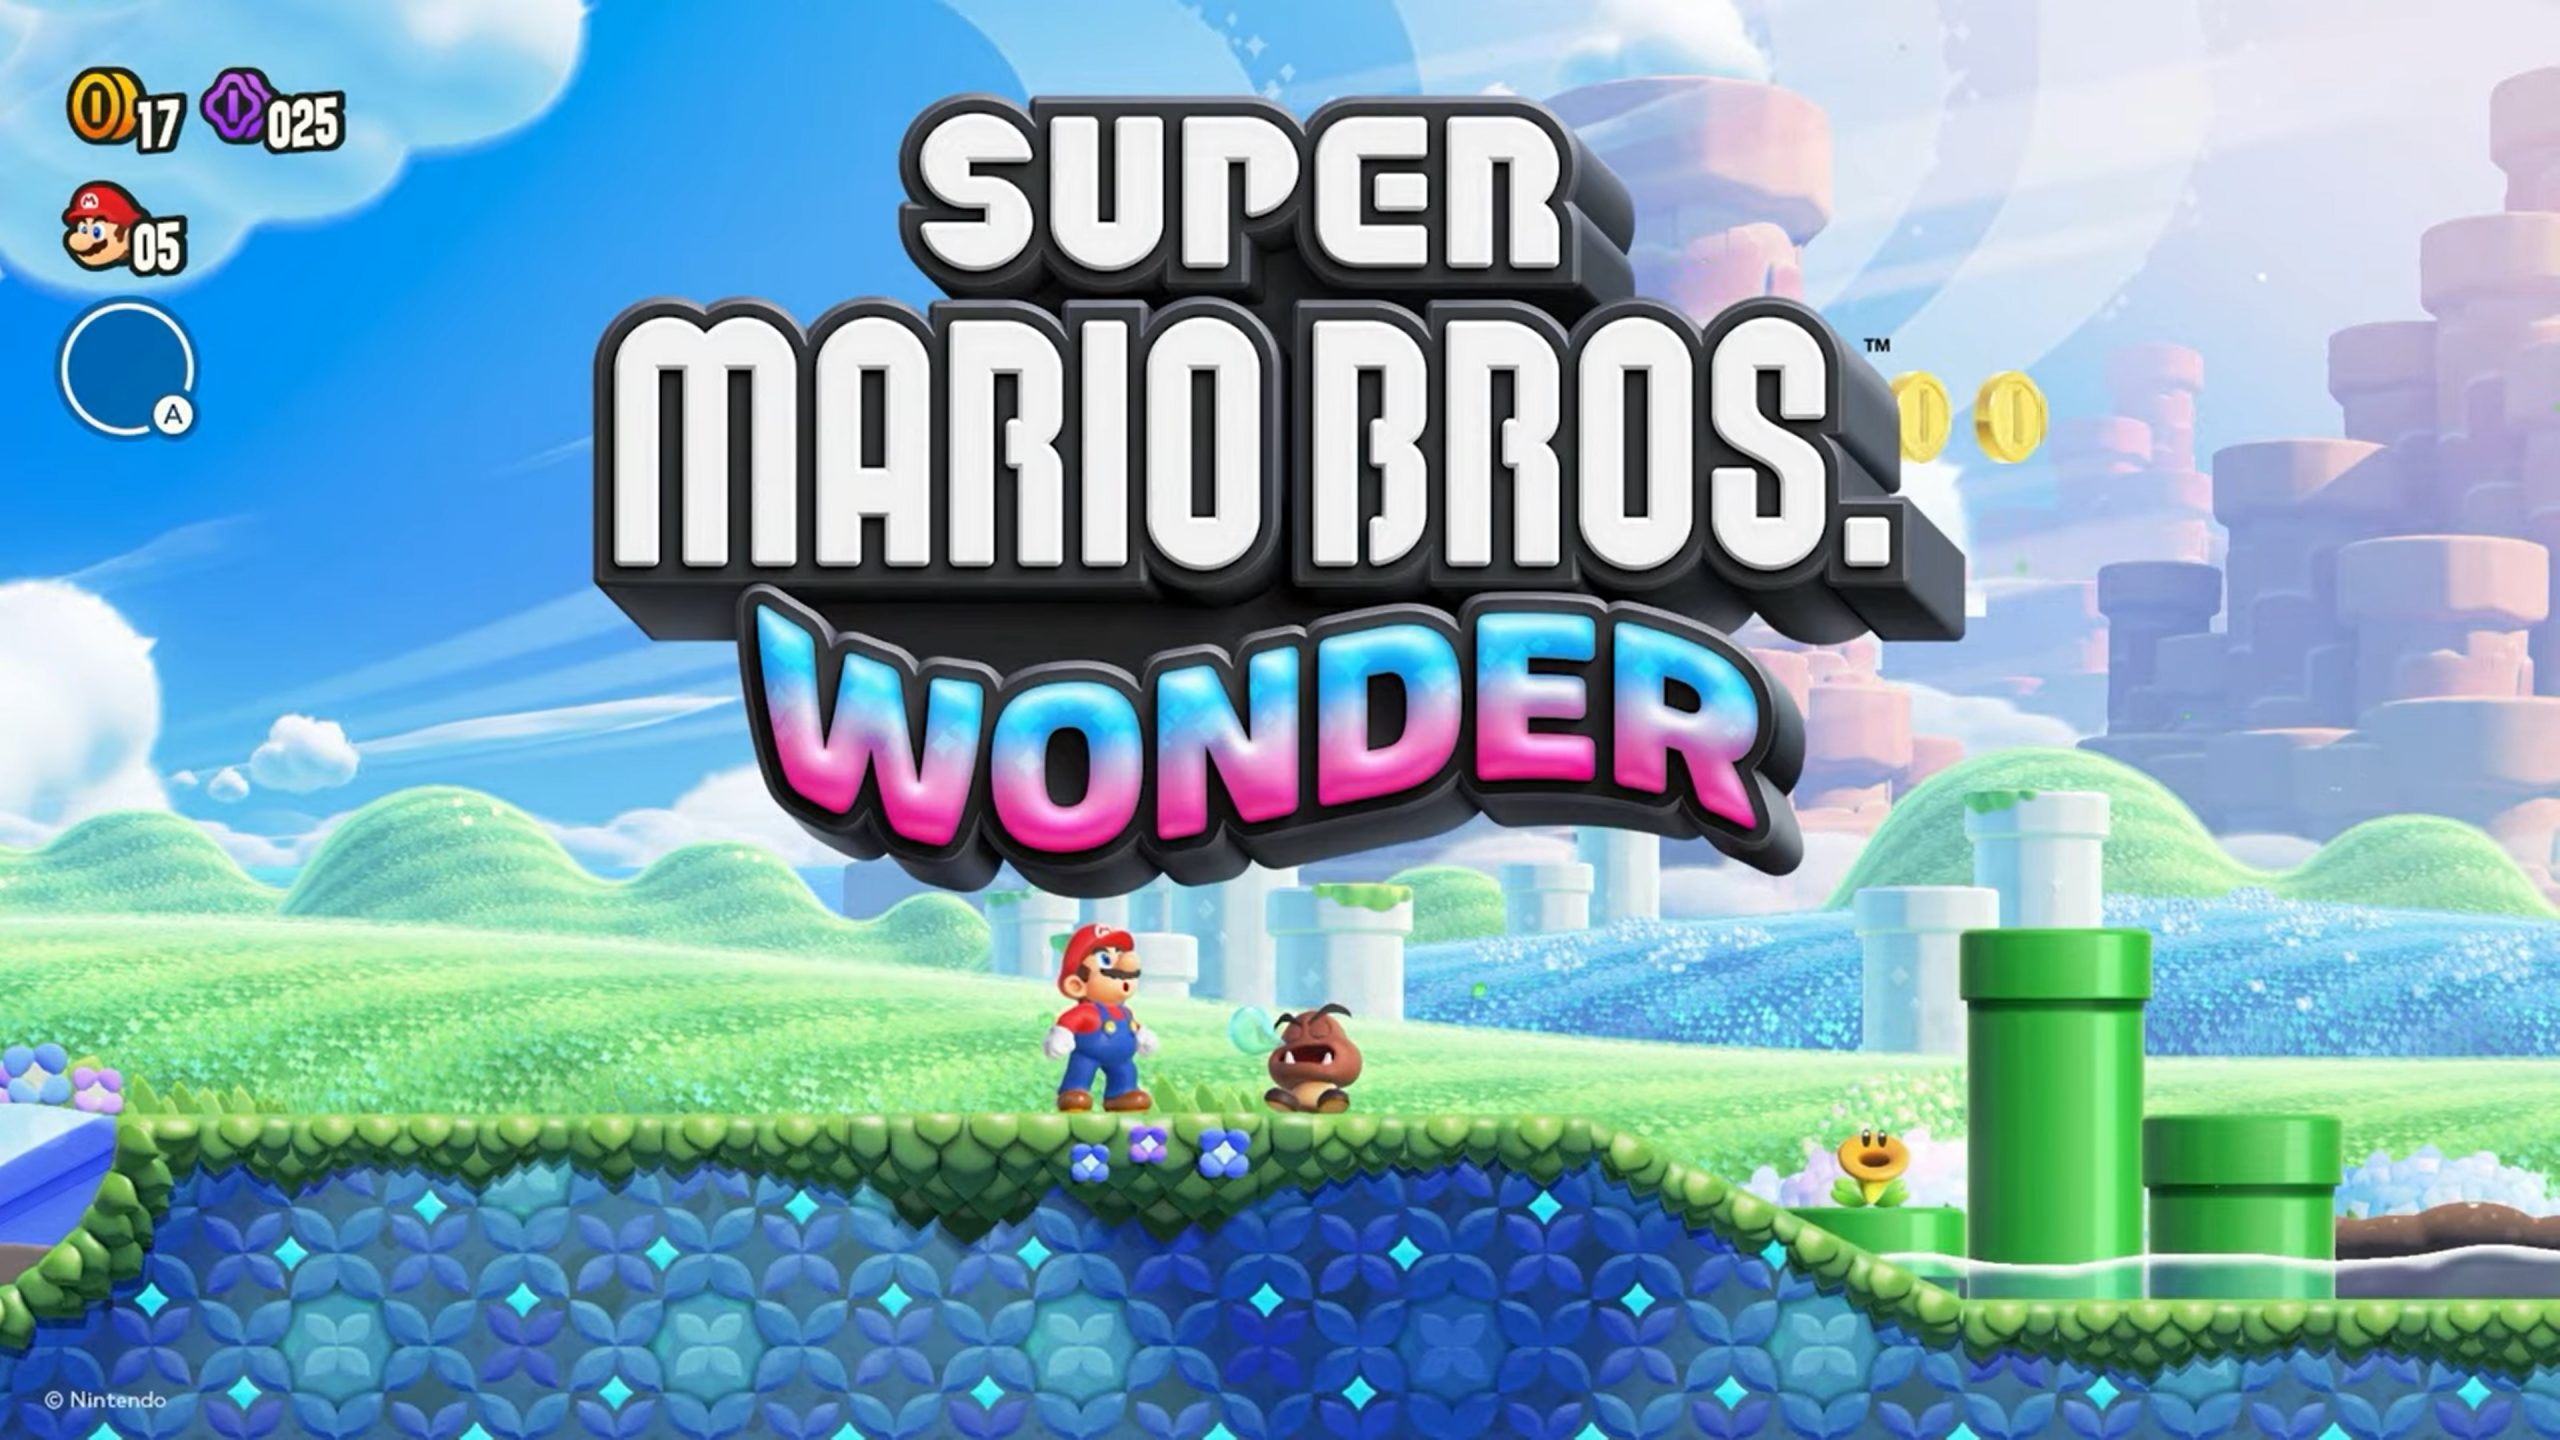 Super Mario Bros. Wonder - My Nintendo Store